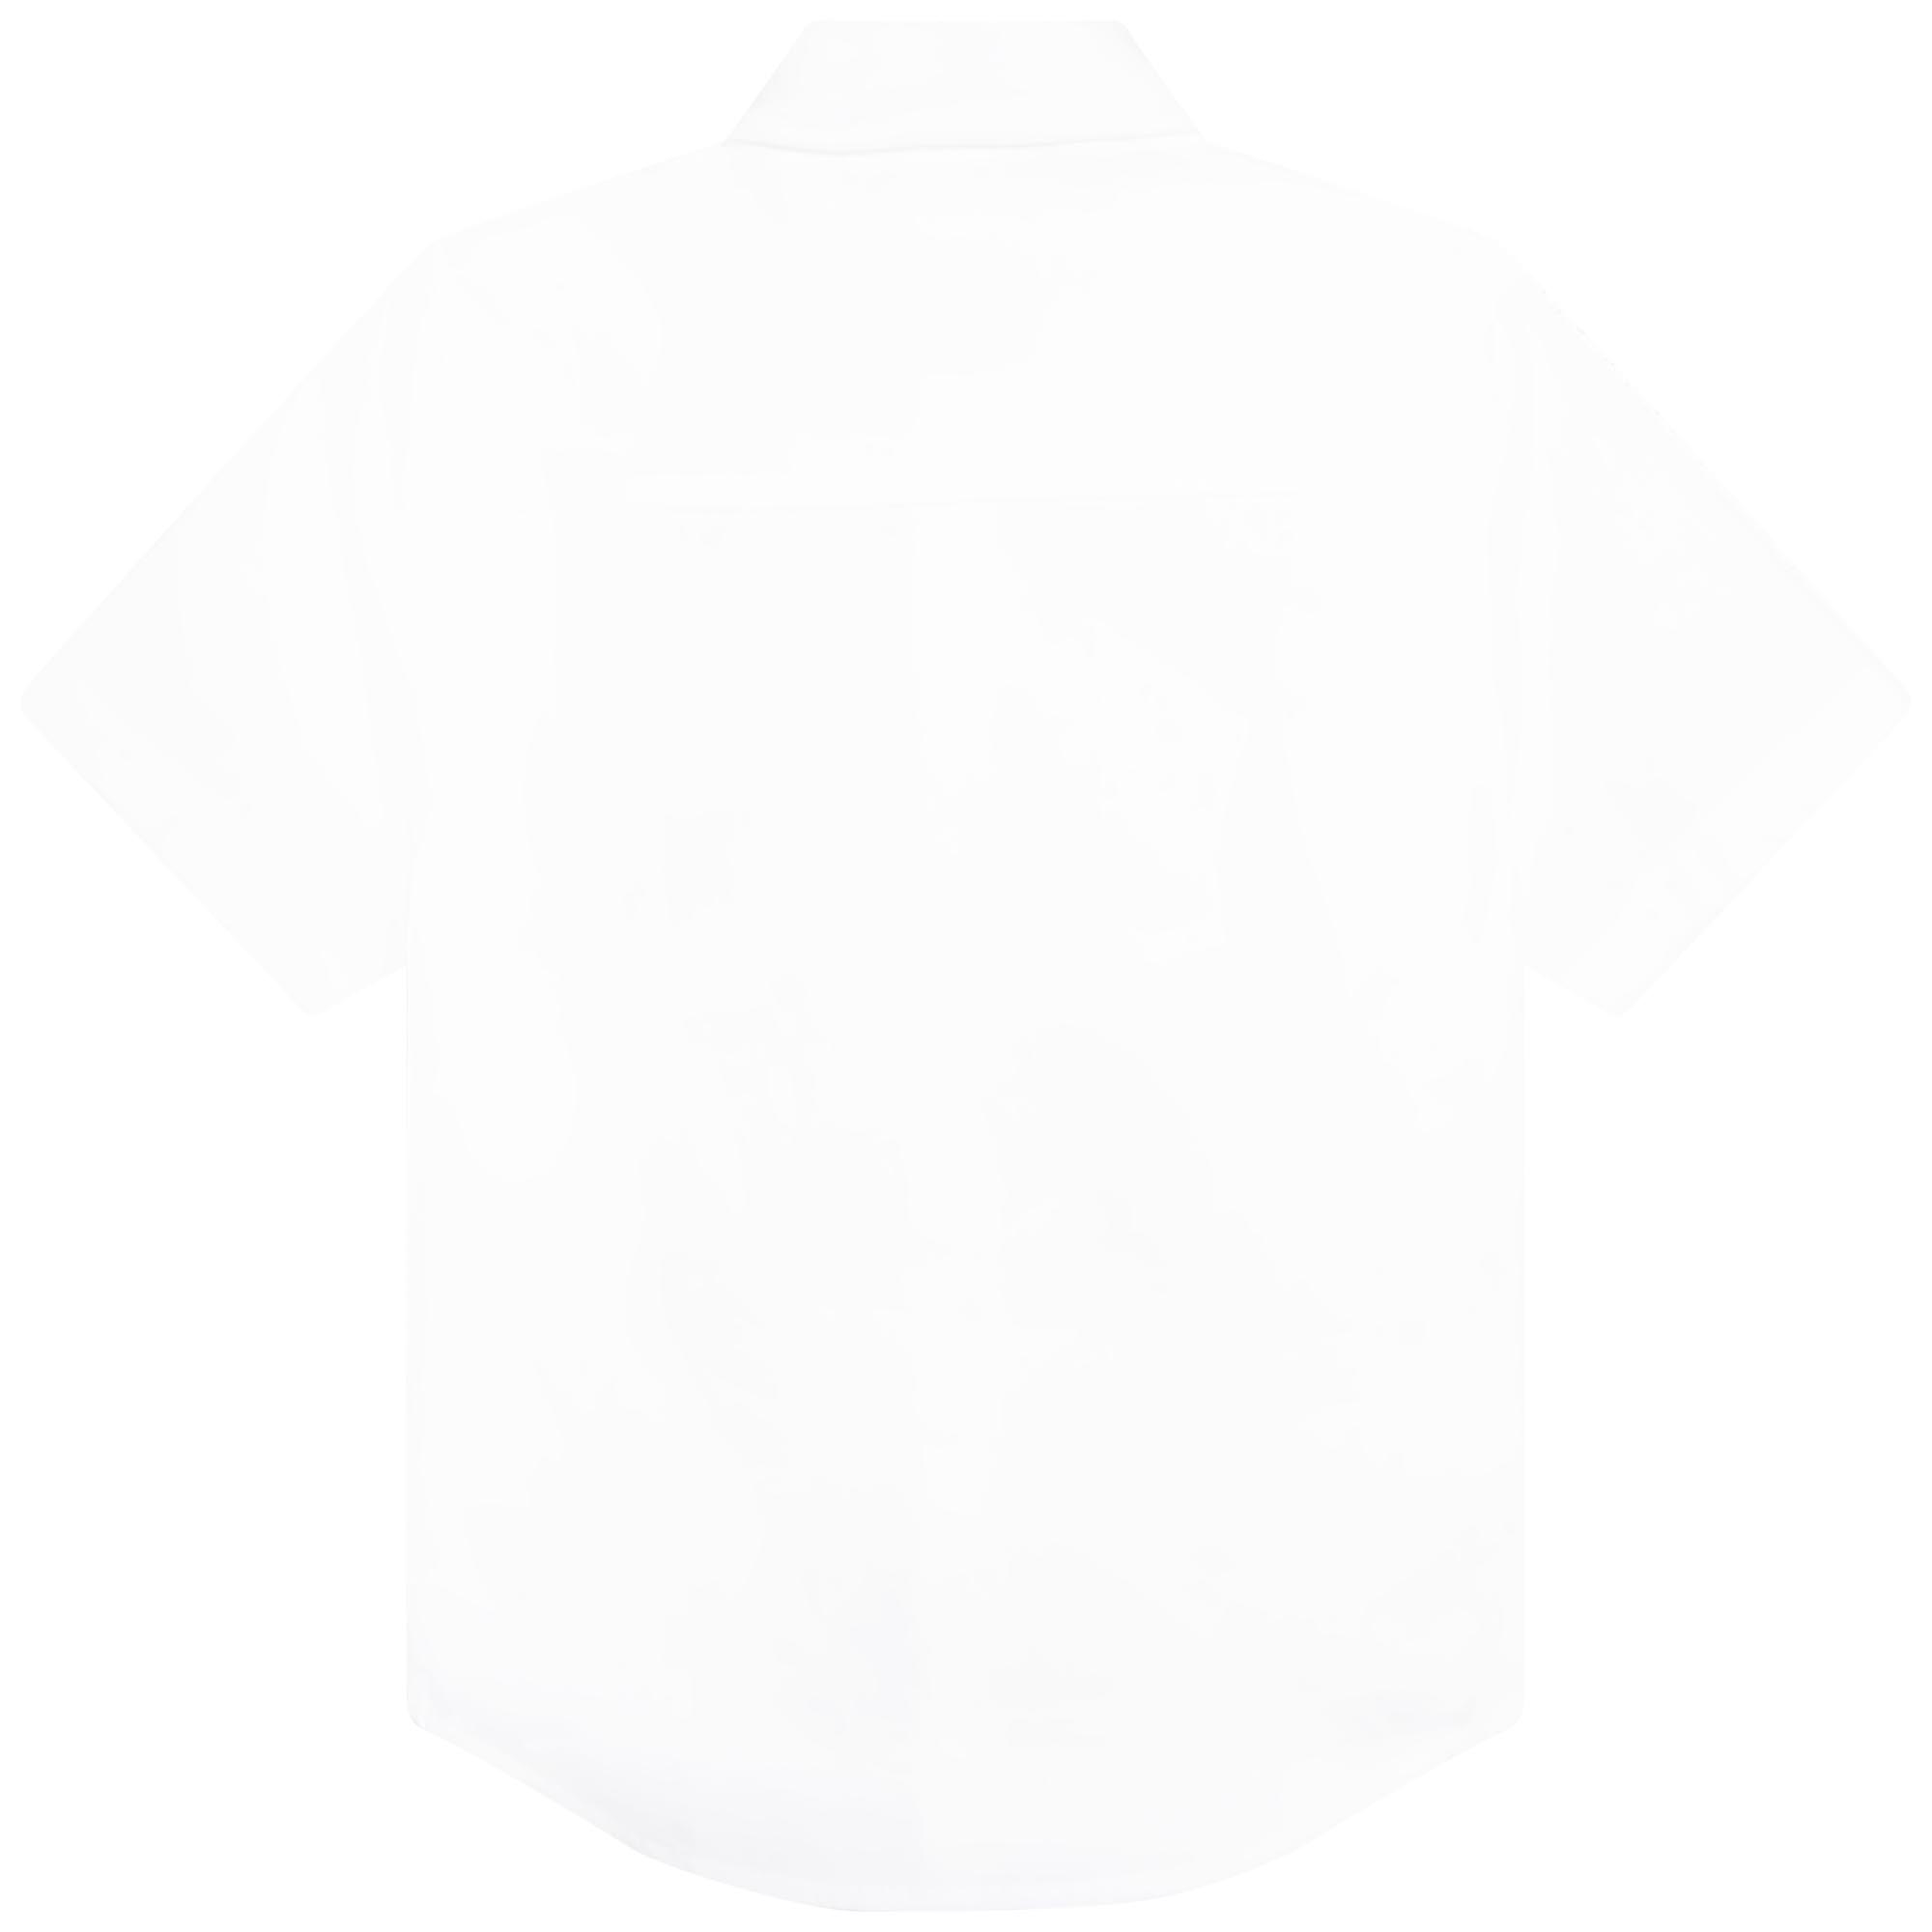 Short-sleeved cotton shirt BOSS for BOY